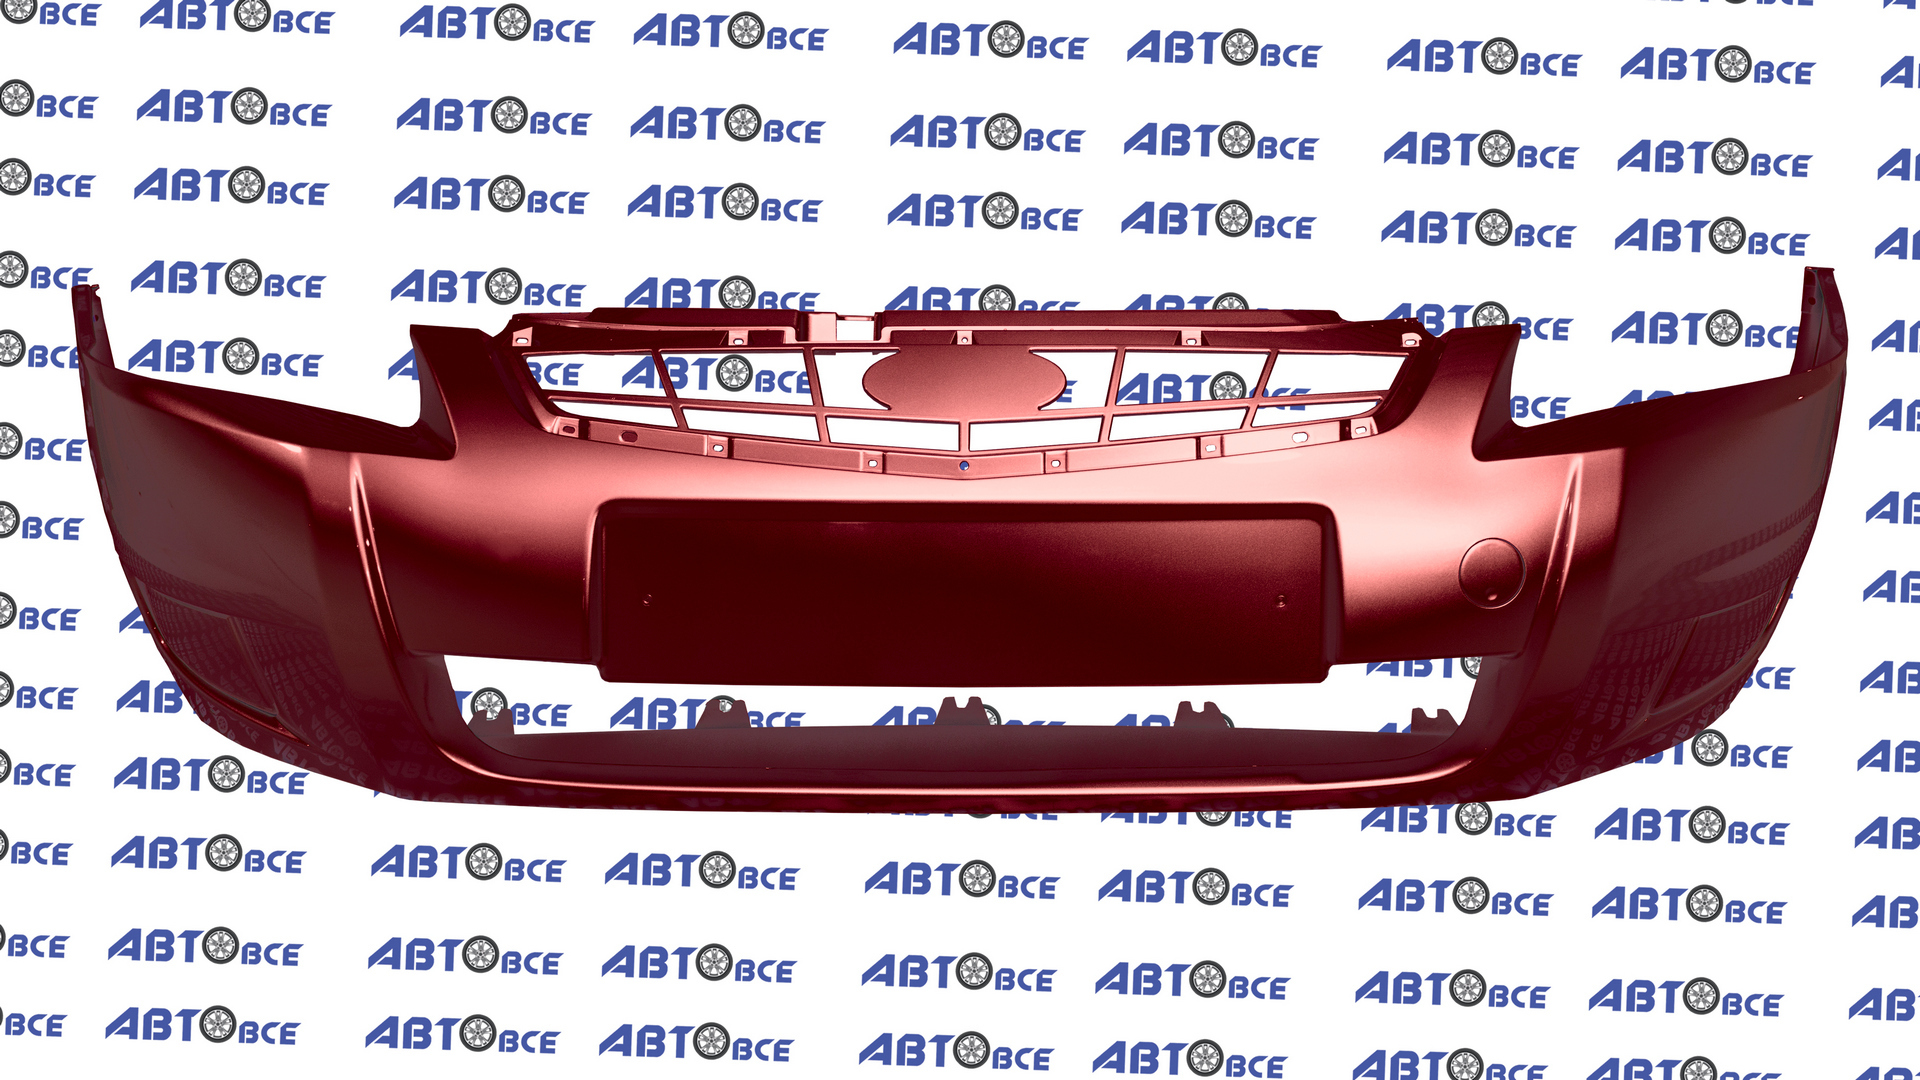 Бампер передний ВАЗ-21704-2171-21724 (рестайлинг) в цвет Антарес (125) Нового Образца под туманки Кампласт